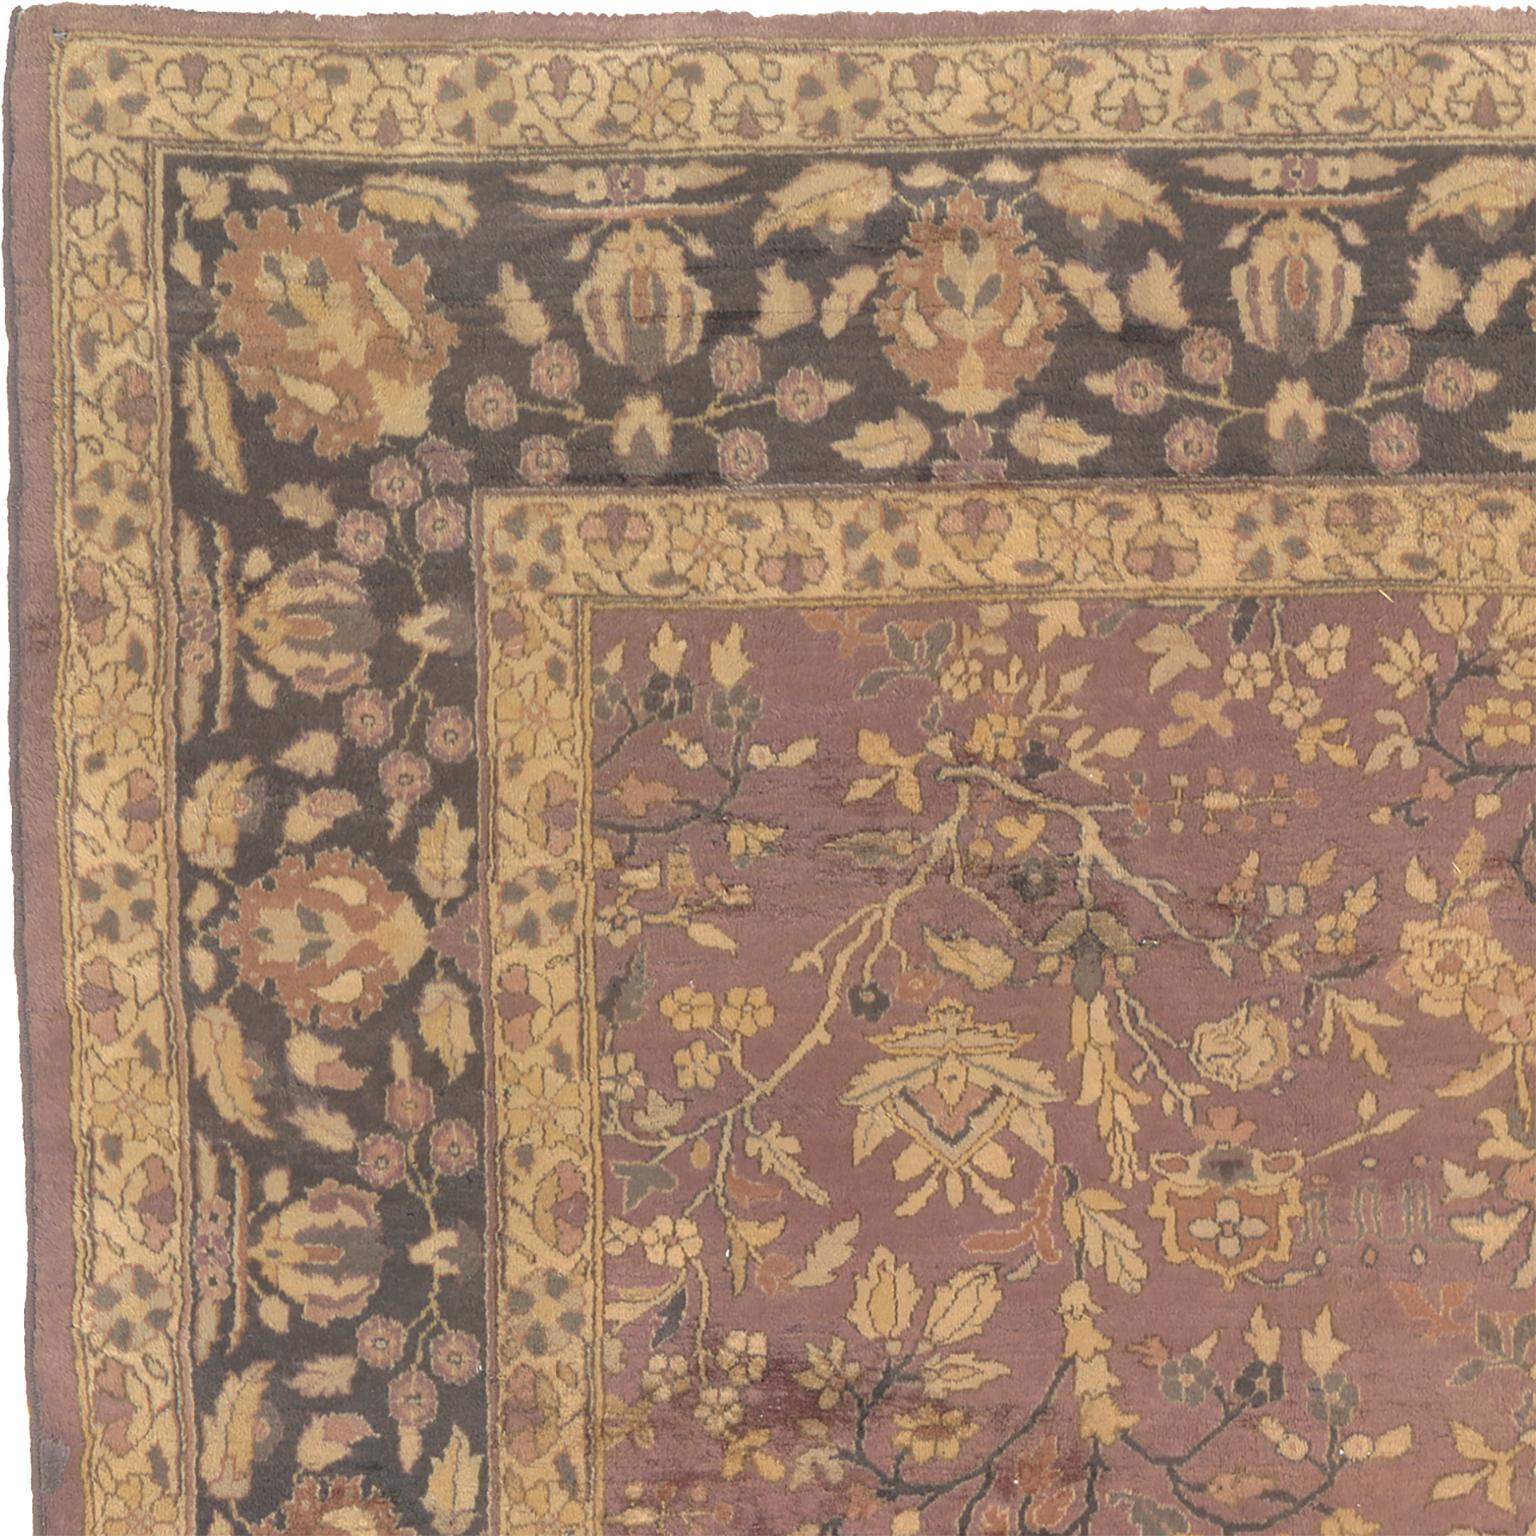 Antiker Indo-Persischer Teppich
Indien um 1920
Geometrisches Design
11'9